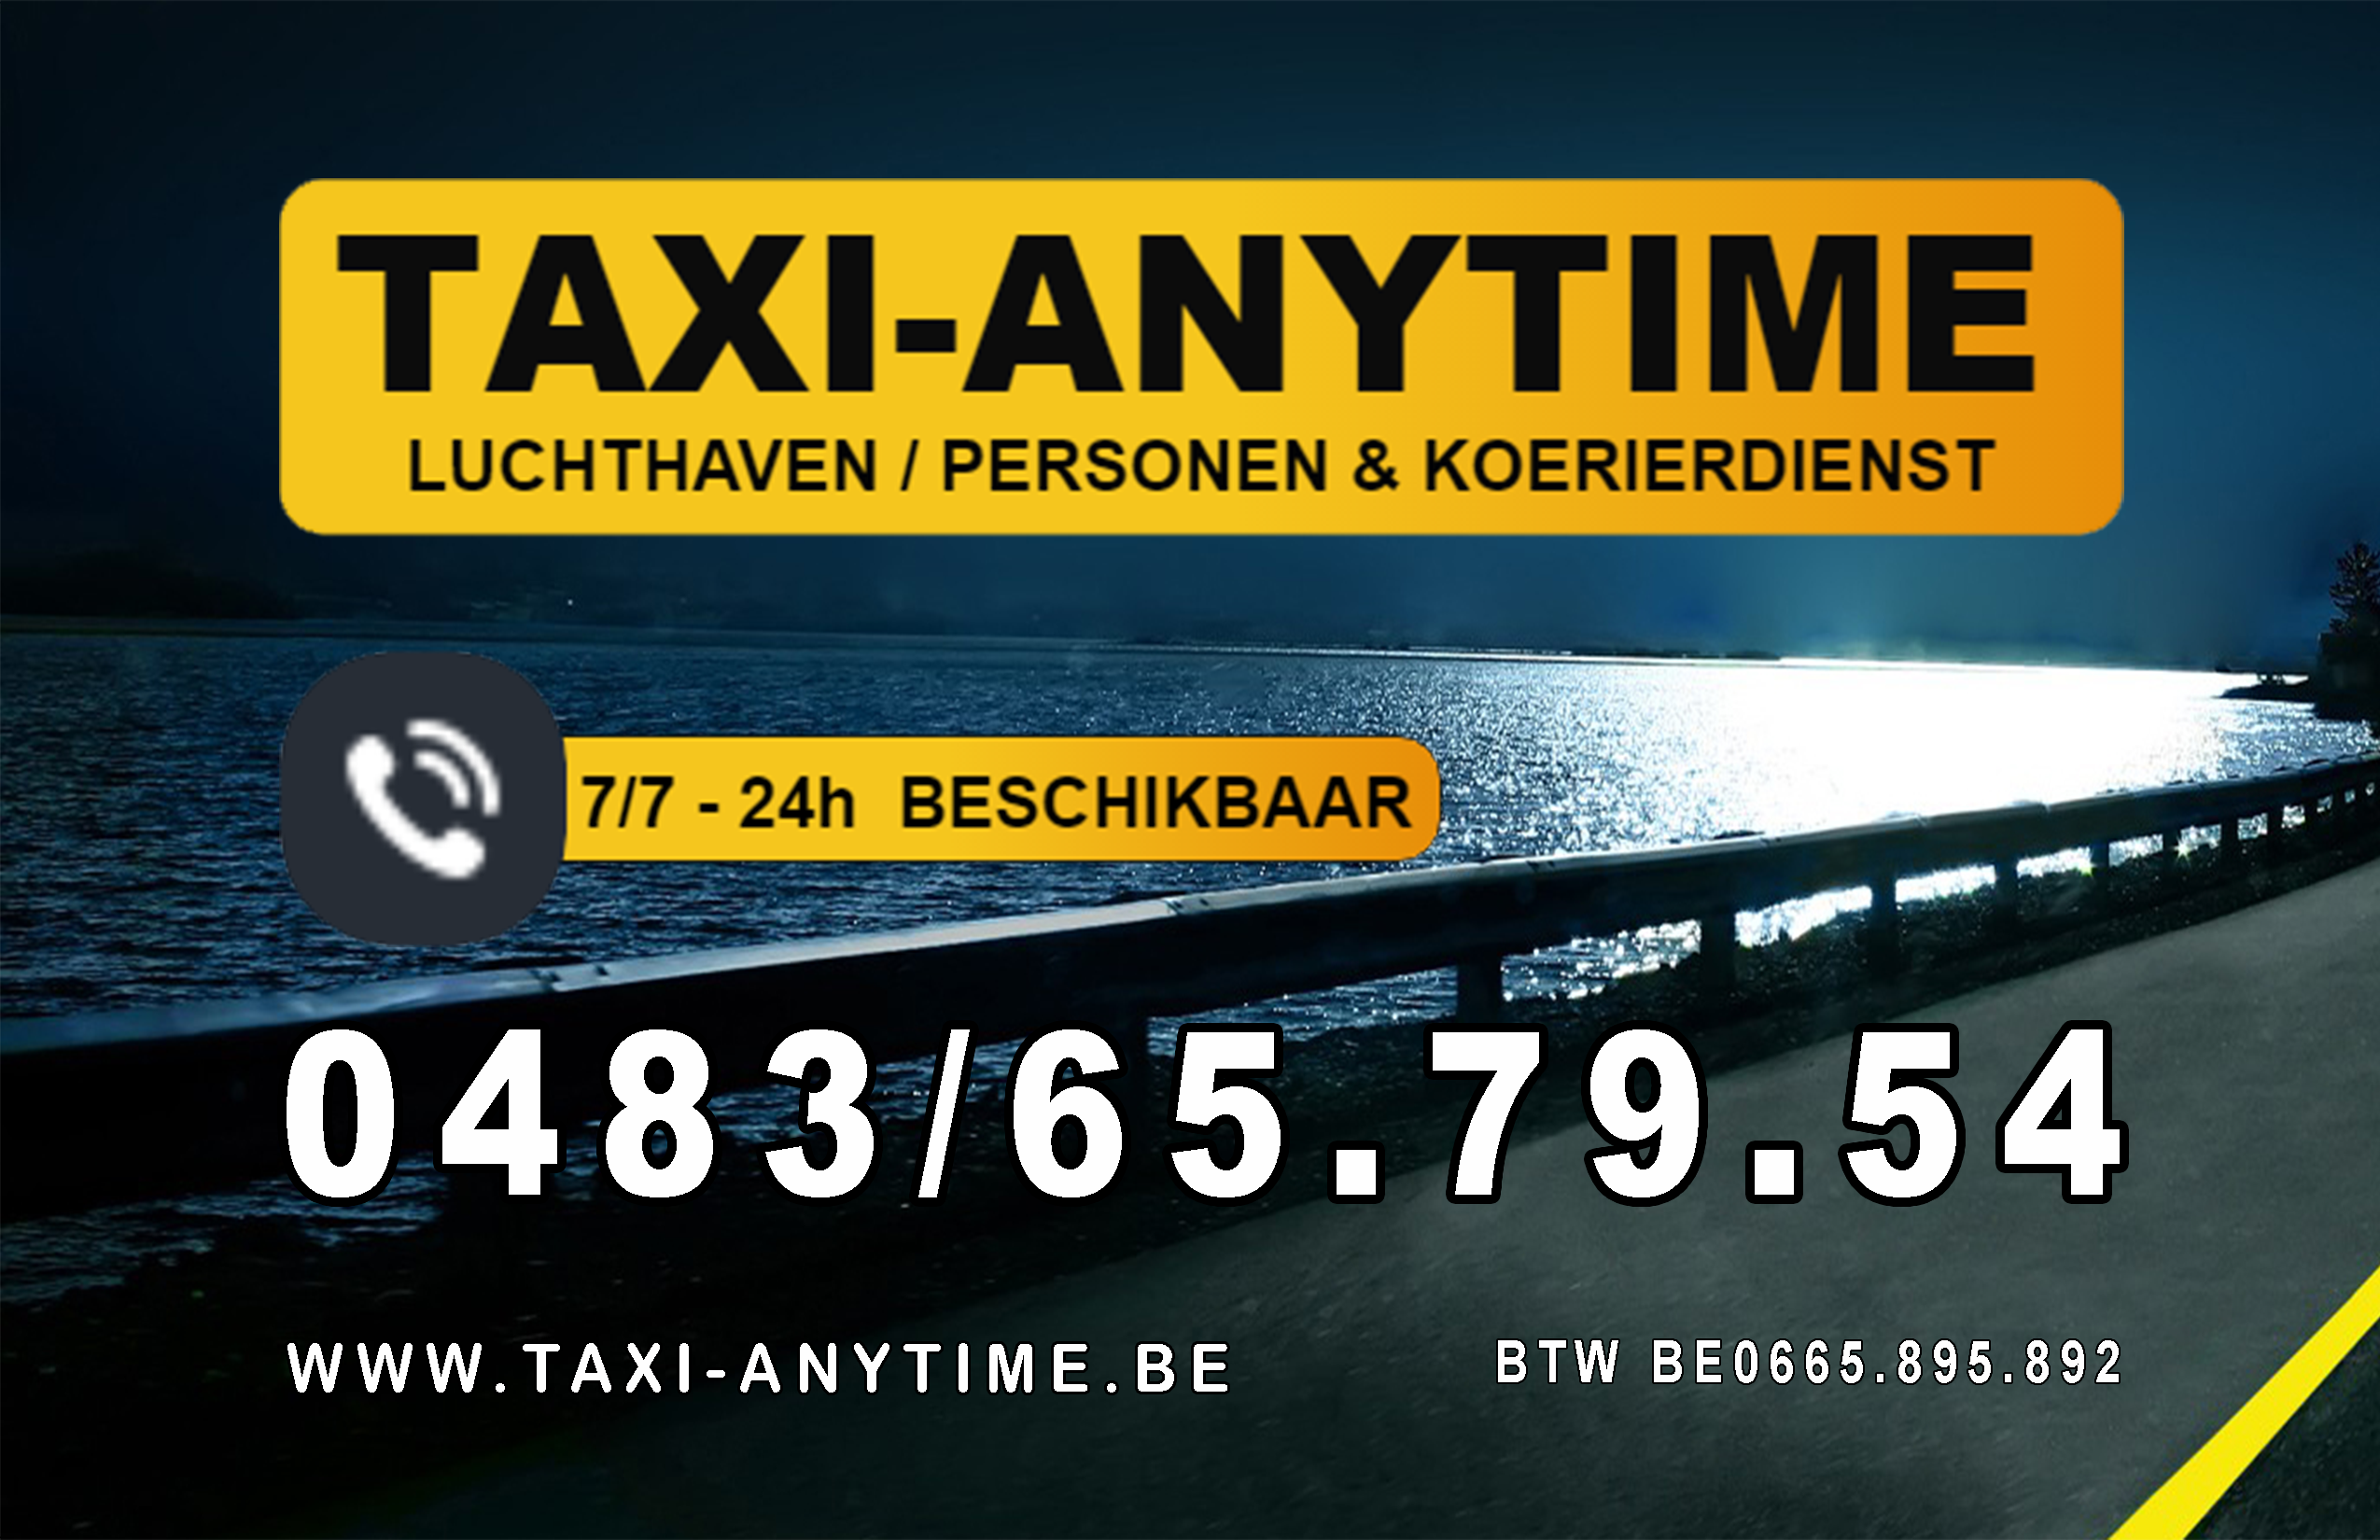 taxibedrijven met luchthavenvervoer Helchteren Taxi-anytime